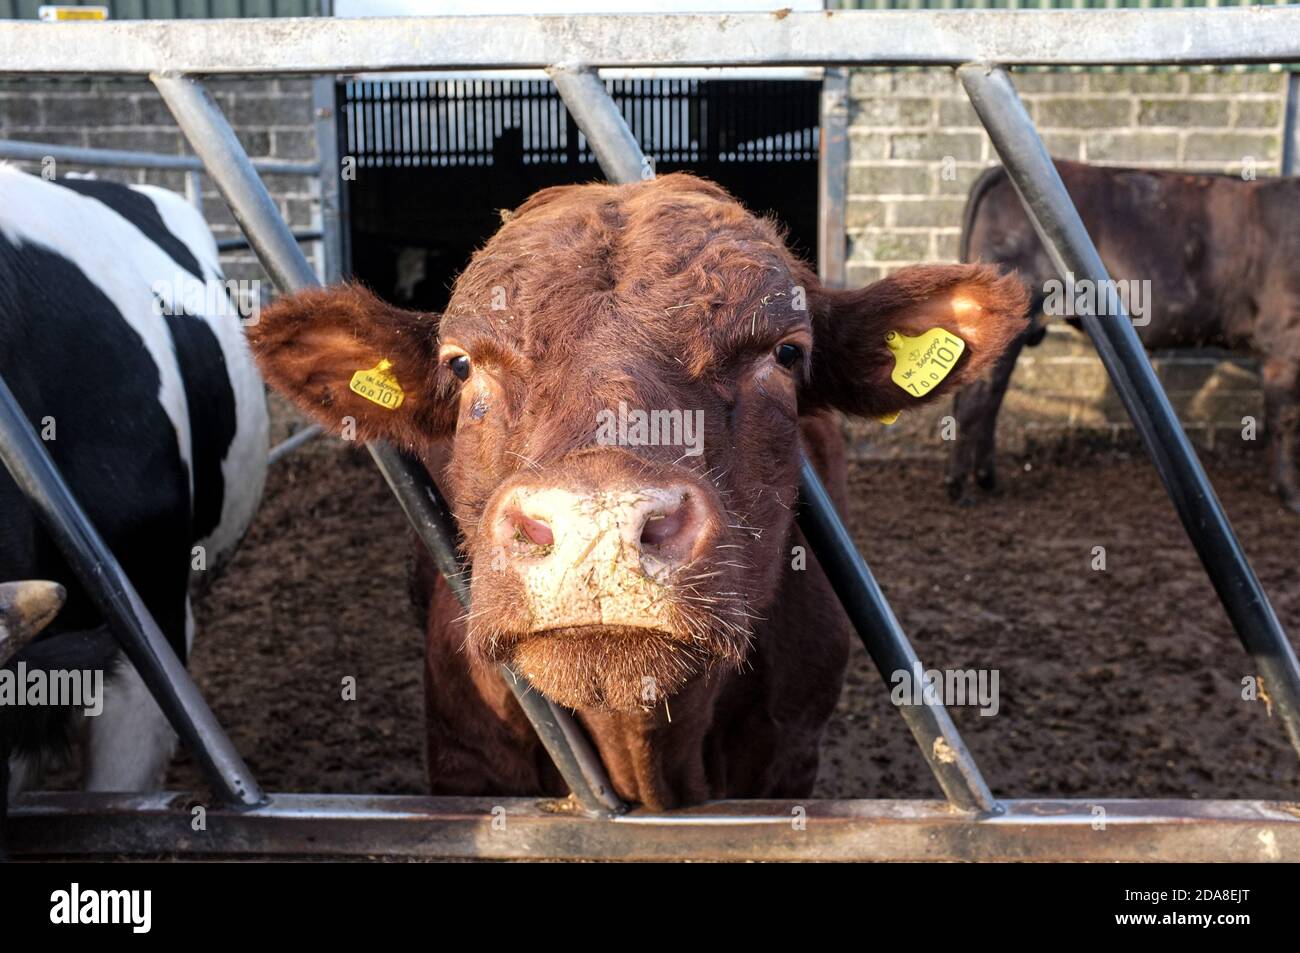 Kuh trägt Tags in den Ohren stehend mit Kopf zwischen Bars der Futterstation mit anderen Rindern direkt in die Kamera schauen. Farm Yard Devon, England. Stockfoto